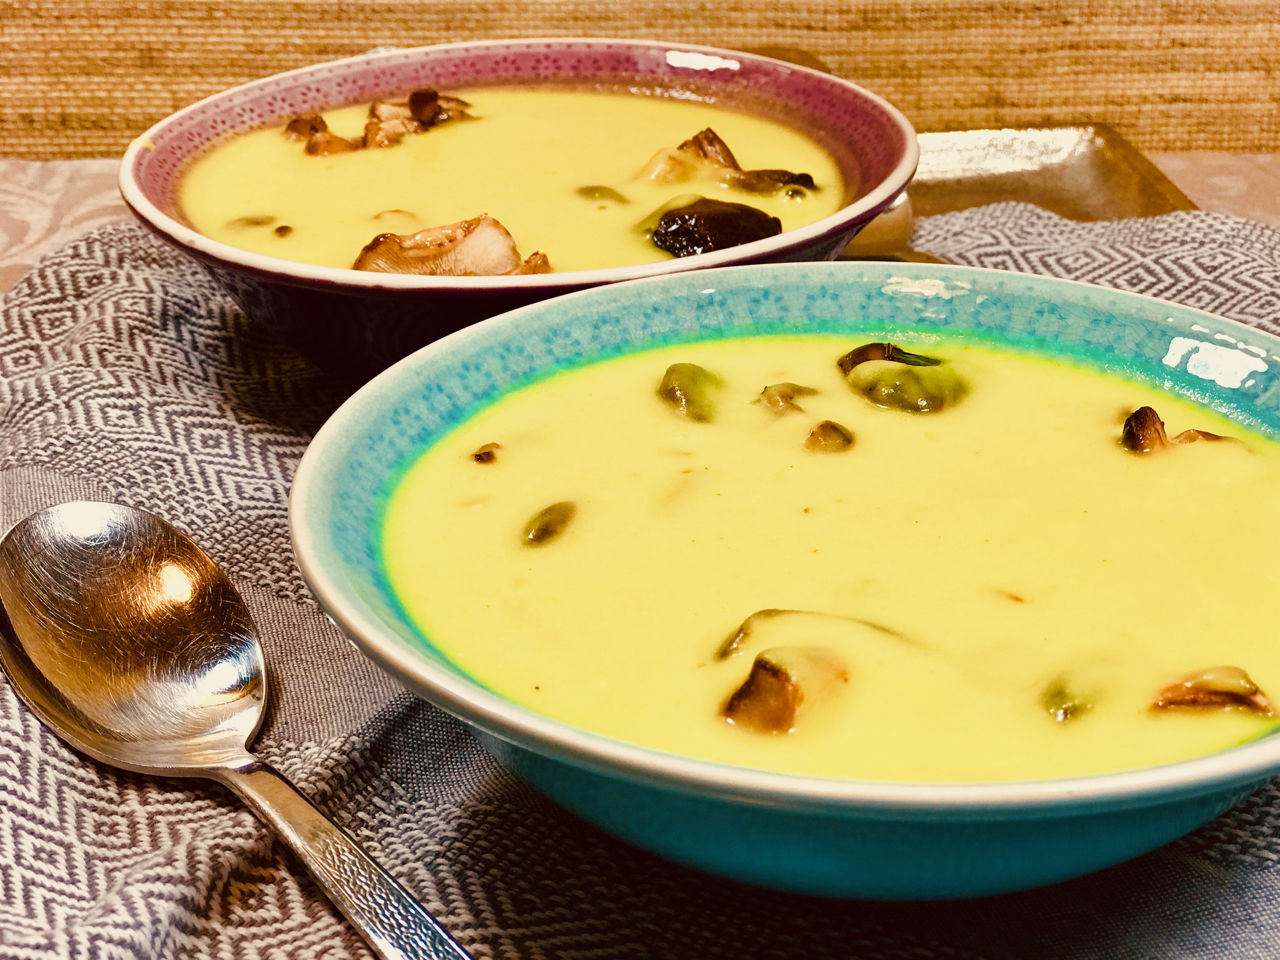 Celerová polévka s houbami shittake - jak zhubnout v menopauze